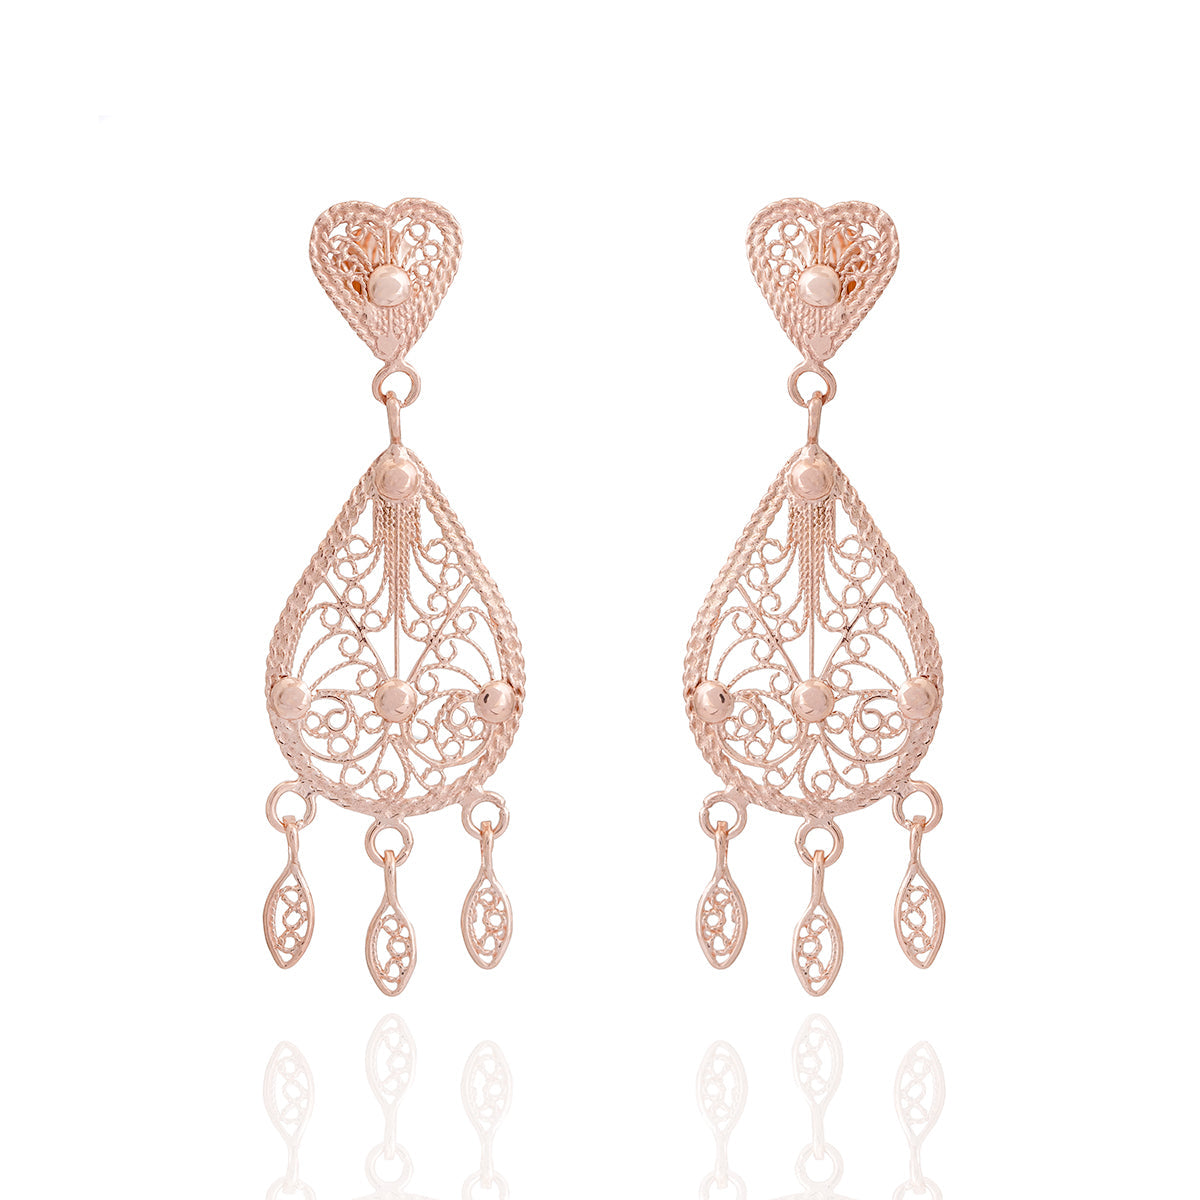 Teardrop Earrings - Elegant Rose Gold Jewelry